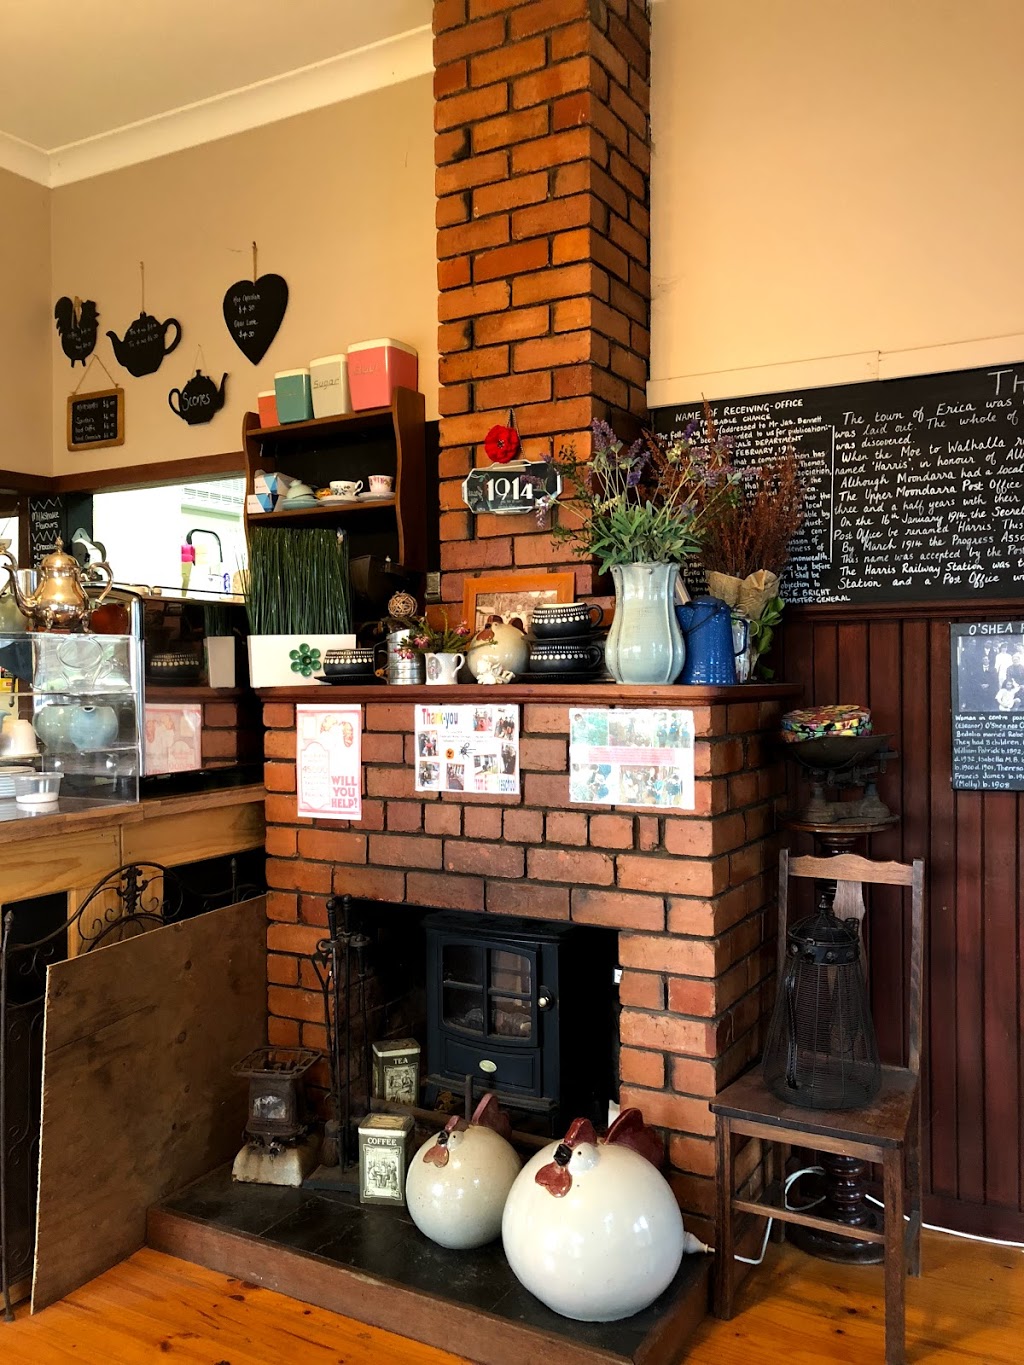 1914 Cafe & Bar | cafe | 2 Henty St, Erica VIC 3825, Australia | 0351653359 OR +61 3 5165 3359